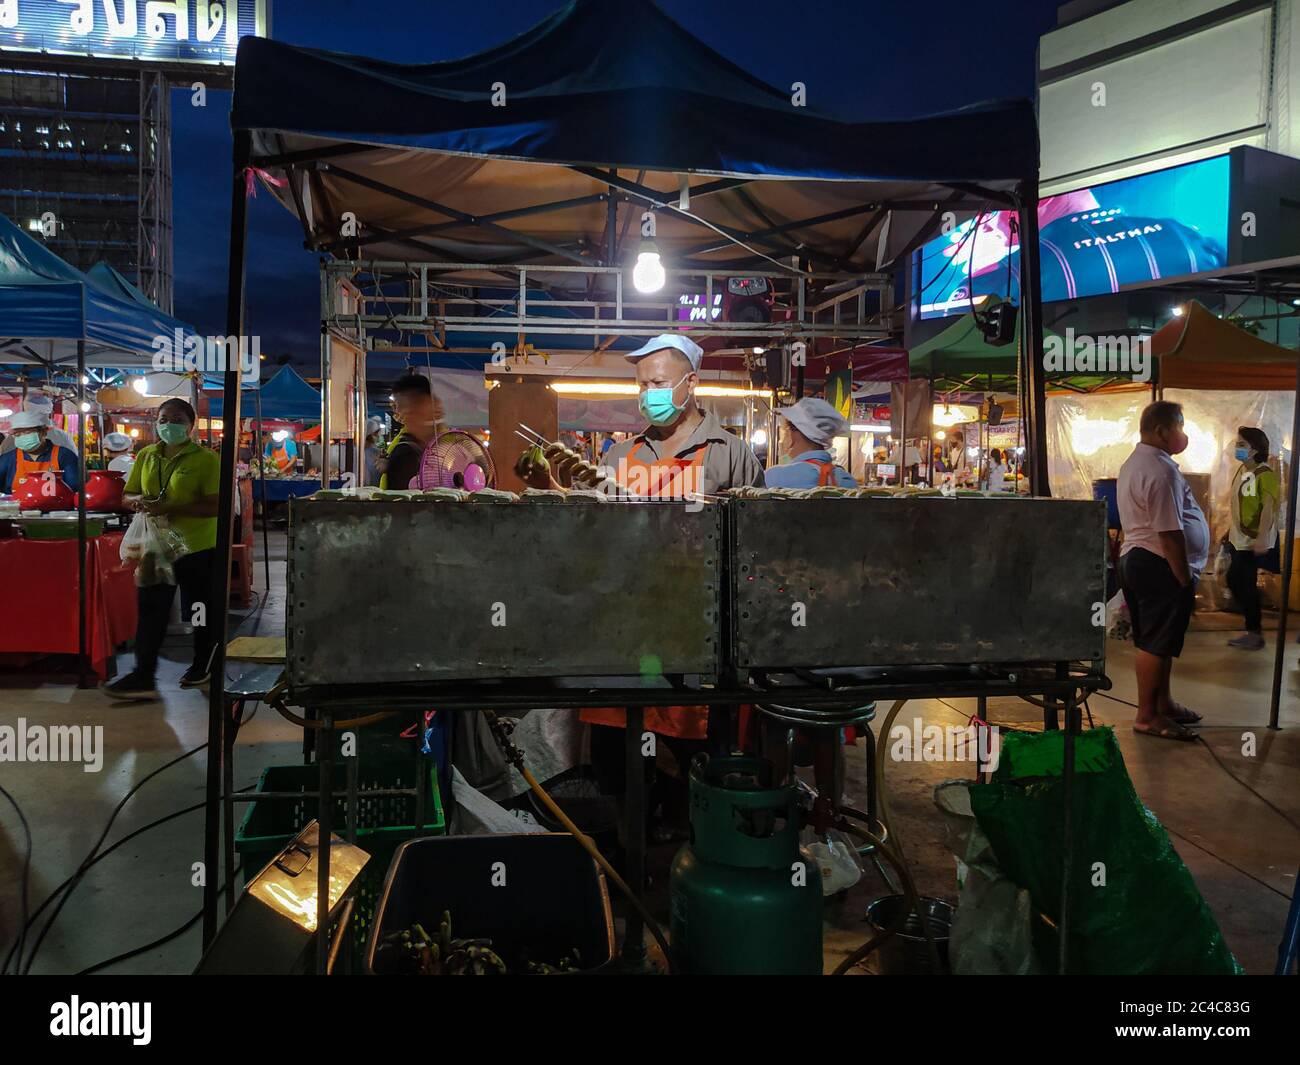 Un homme préparait de la nourriture dans le marché de nuit, Bangkok Thaïlande Banque D'Images